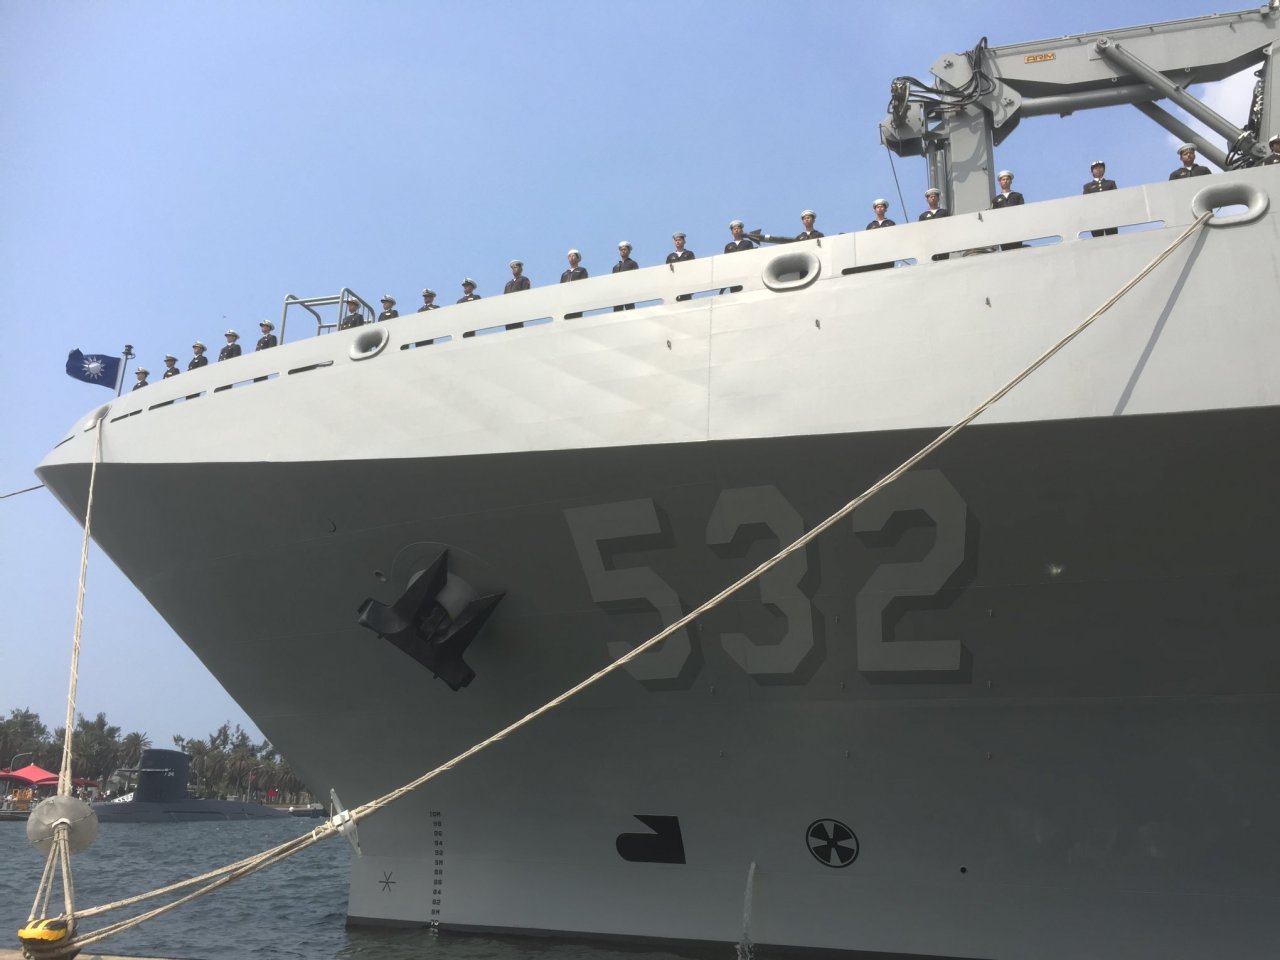 敦睦軍艦接觸者已掌握255人 指揮中心陸續安排採檢